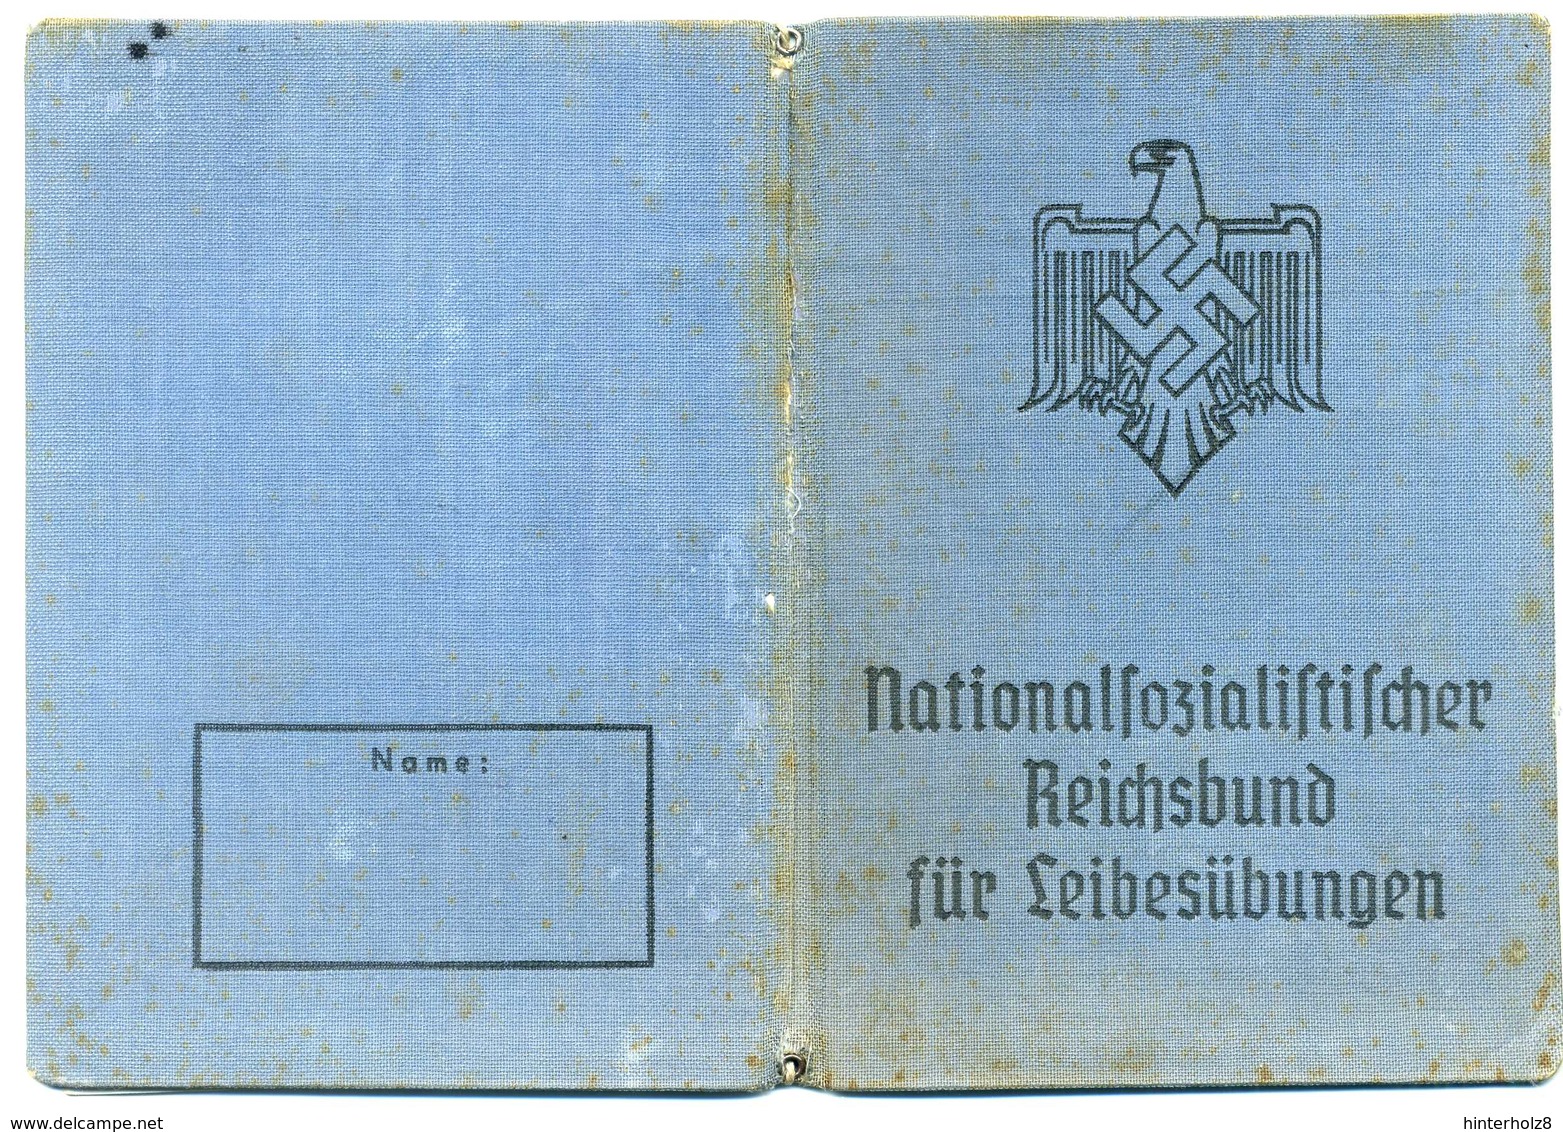 Ostmark; Kreis Wien, Gau 17; Pass Des Reichsbundes Für Leibesübungen; 1939 - Documents